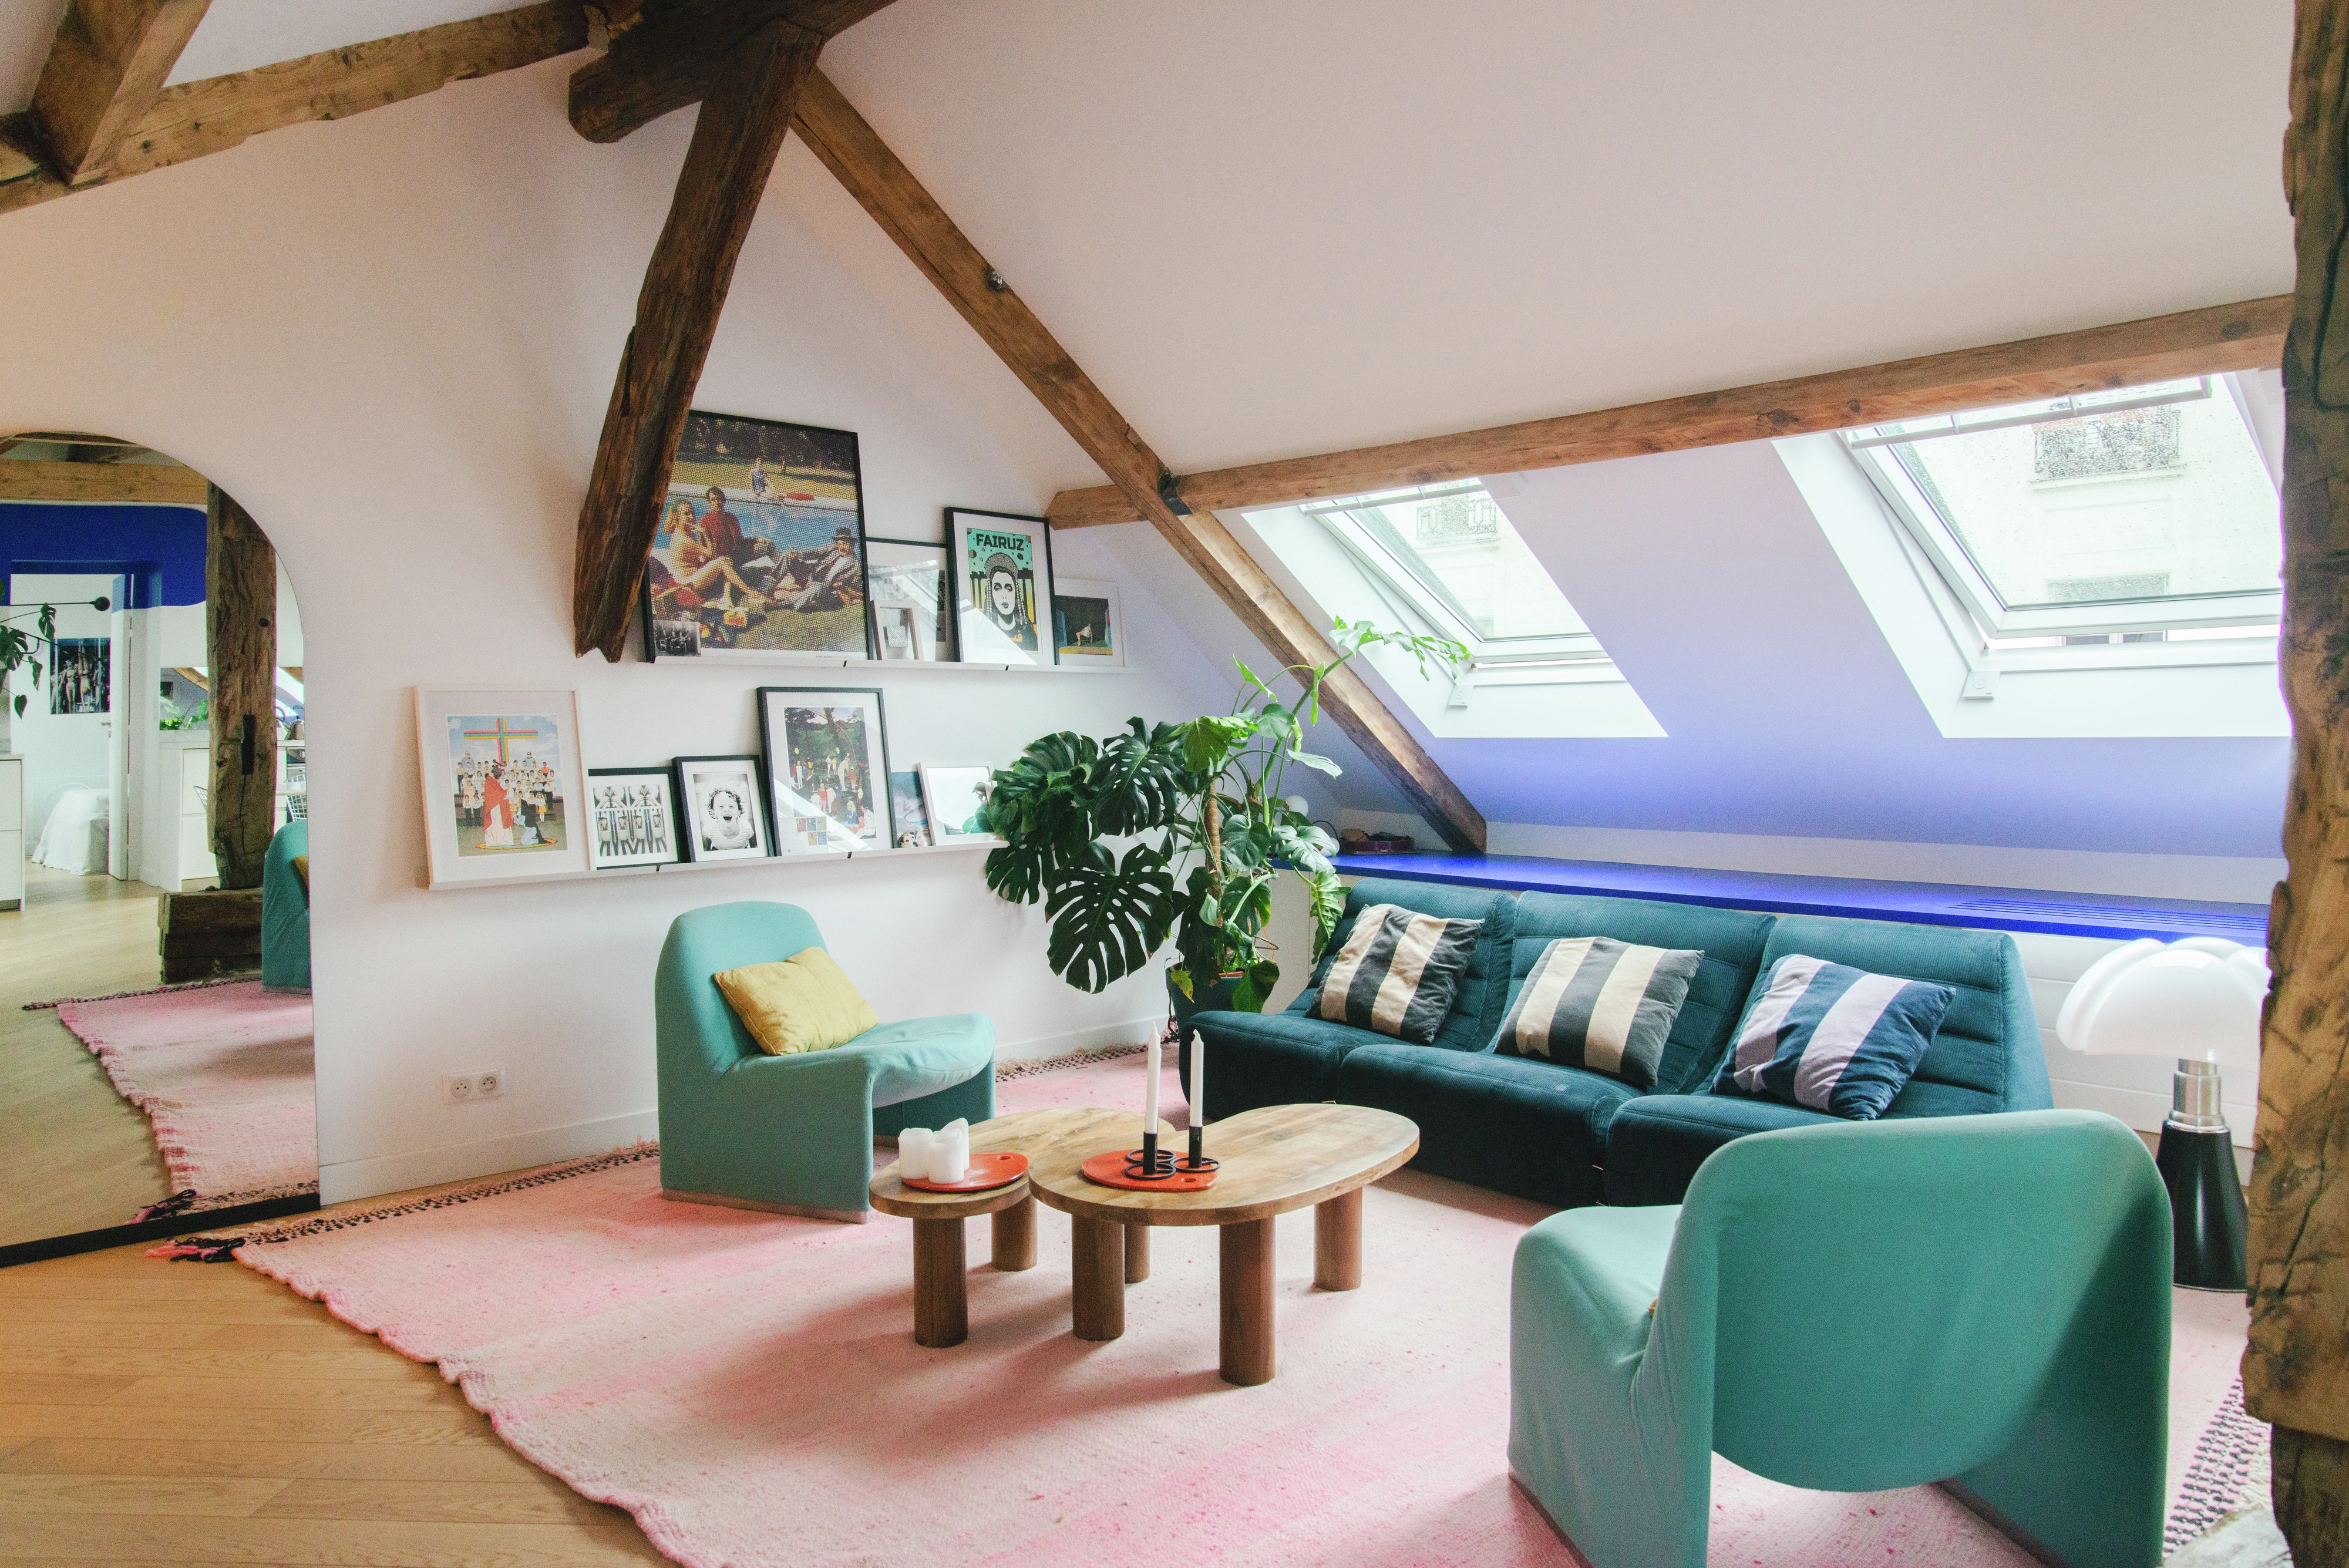 Salon de comble élégant avec des fenêtres VELUX, un canapé bleu, des poutres en bois et des œuvres d'art encadrées.